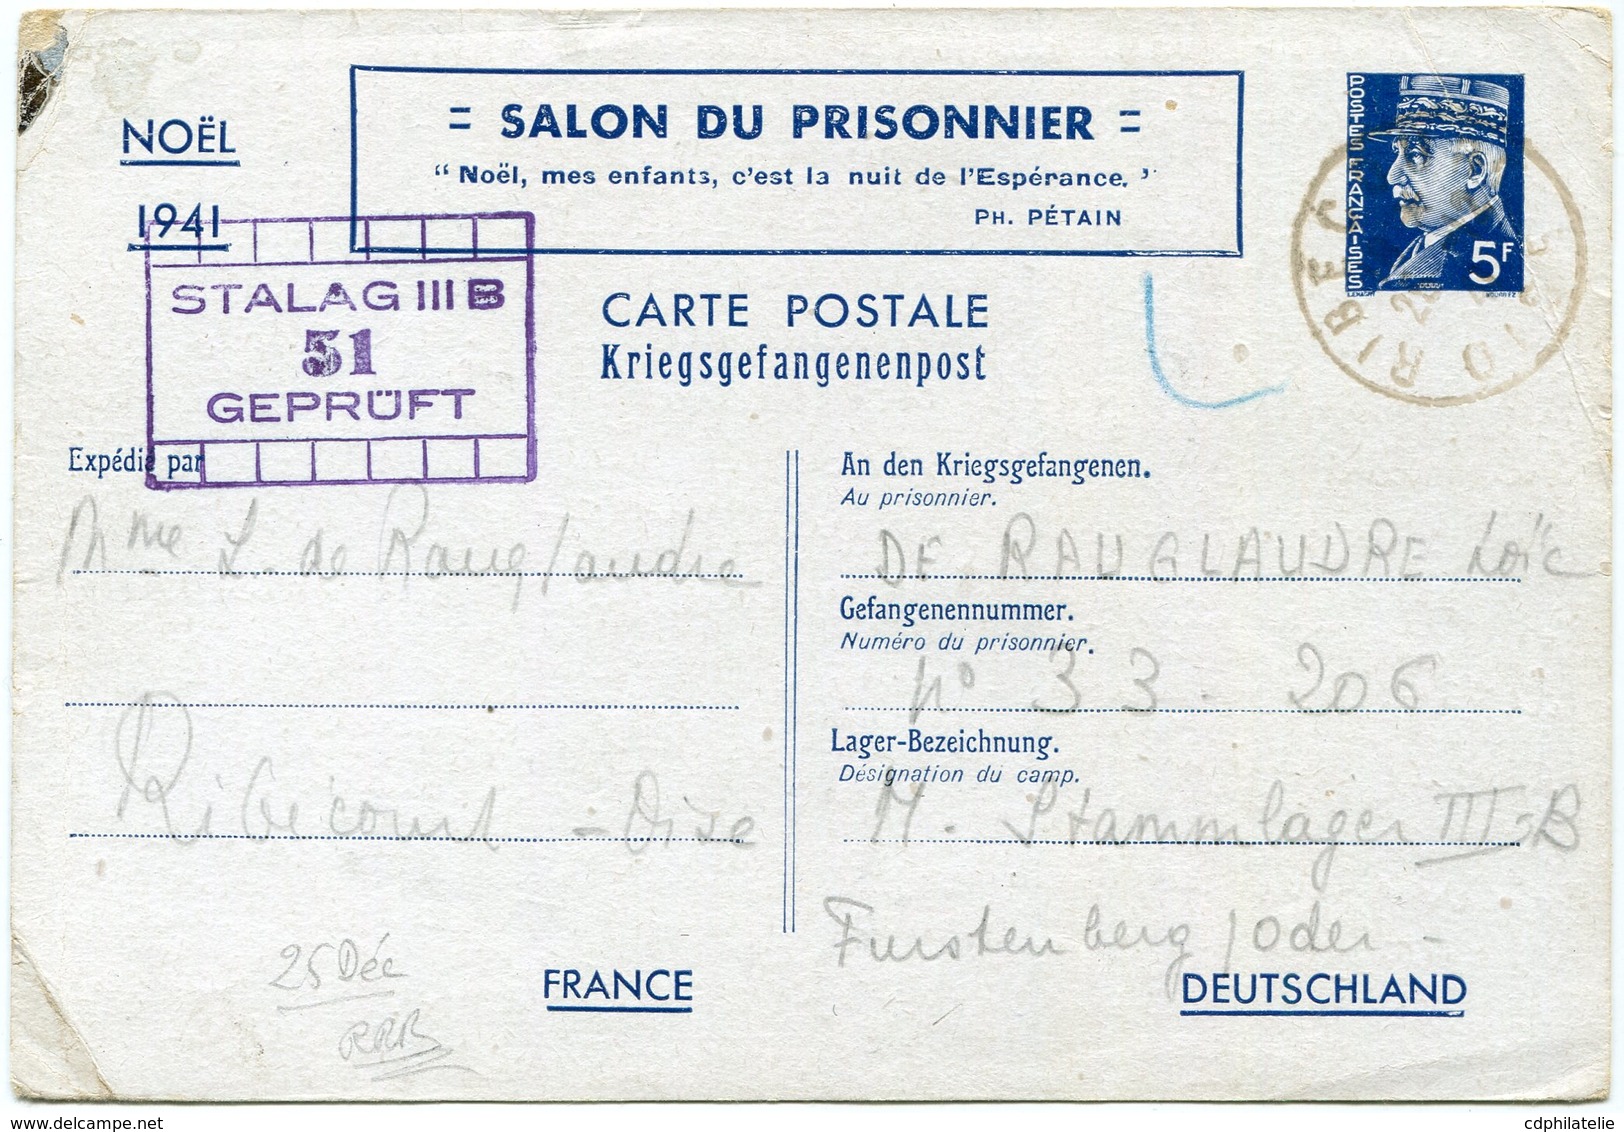 FRANCE ENTIER POSTAL PETAIN (5F) SALON DU PRISONNIER NOEL 1941 AVEC CACHET "STALAG III B 51.." DEPART RIBECOURT 25-12-41 - Guerre De 1939-45